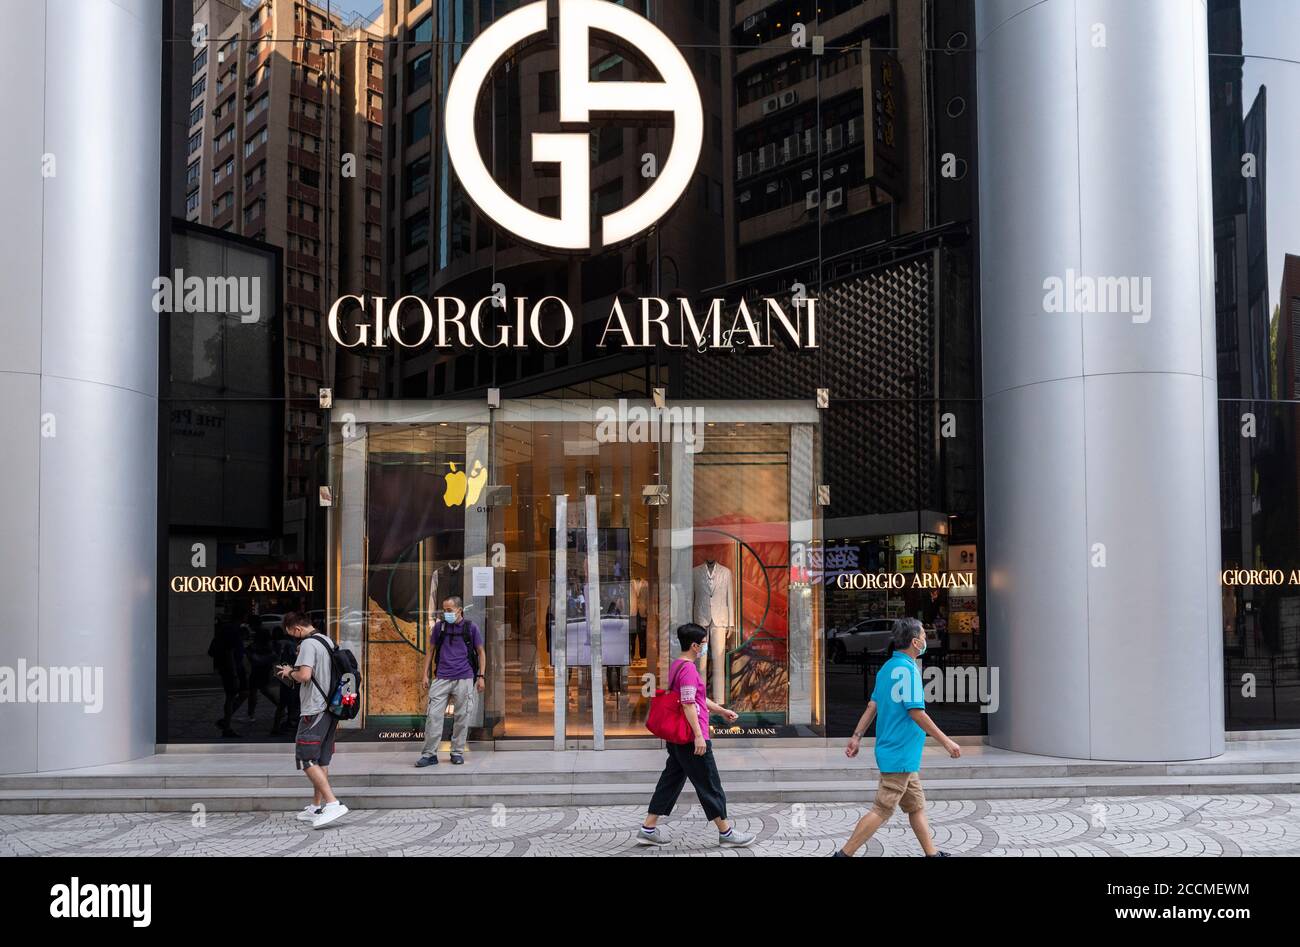 Tsim Sha Tsui, Hong Kong, China - April 09, 2019: Giorgio Armani Store Seen  In Tsim Sha Tsui Hong Kong Stock Photo, Picture and Royalty Free Image.  Image 123264094.